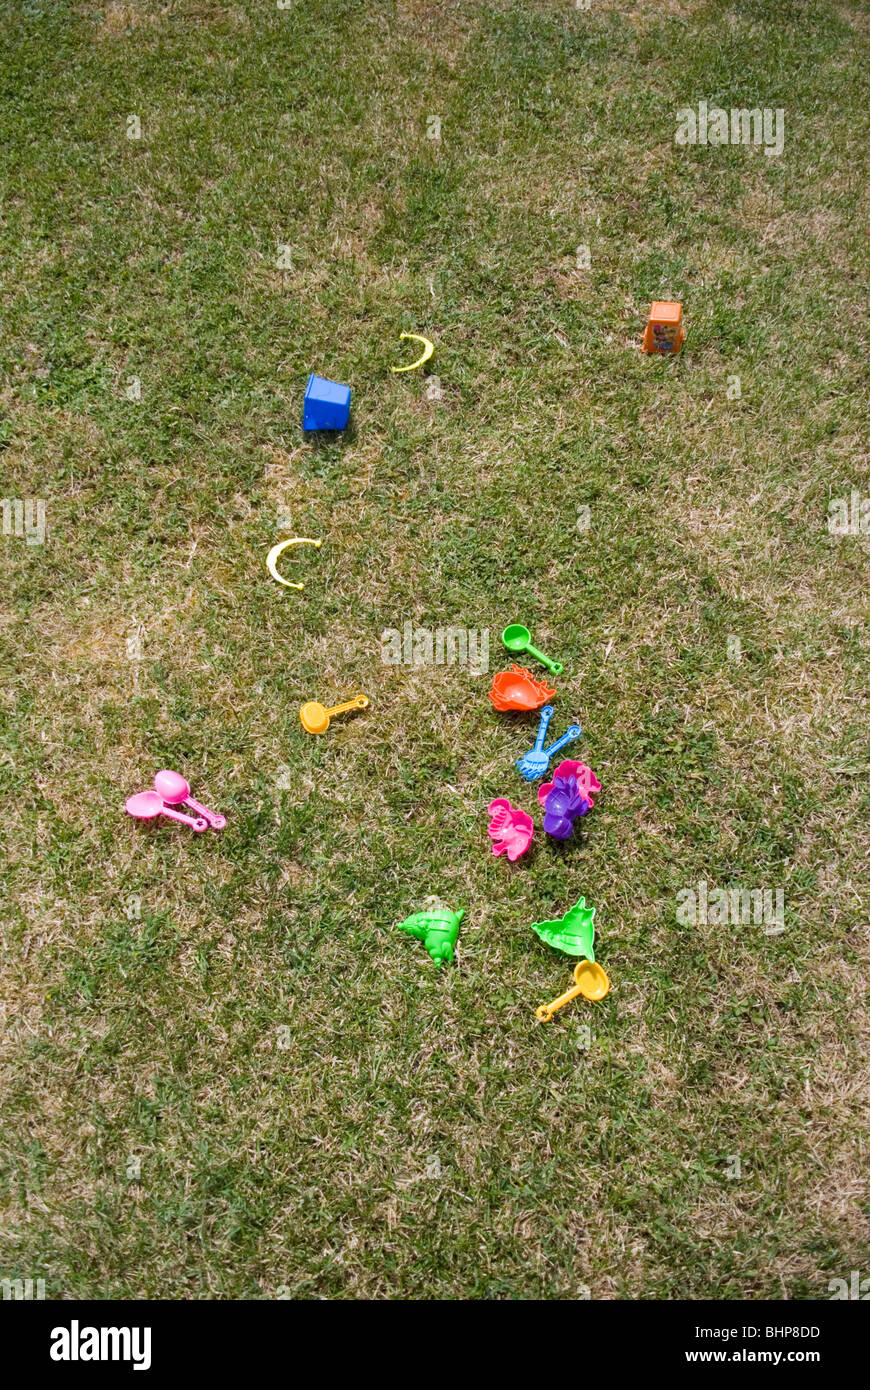 Un assortimento delle colorate bambini giocattoli di plastica giacciono sparsi su un prato in un giardino privato Foto Stock